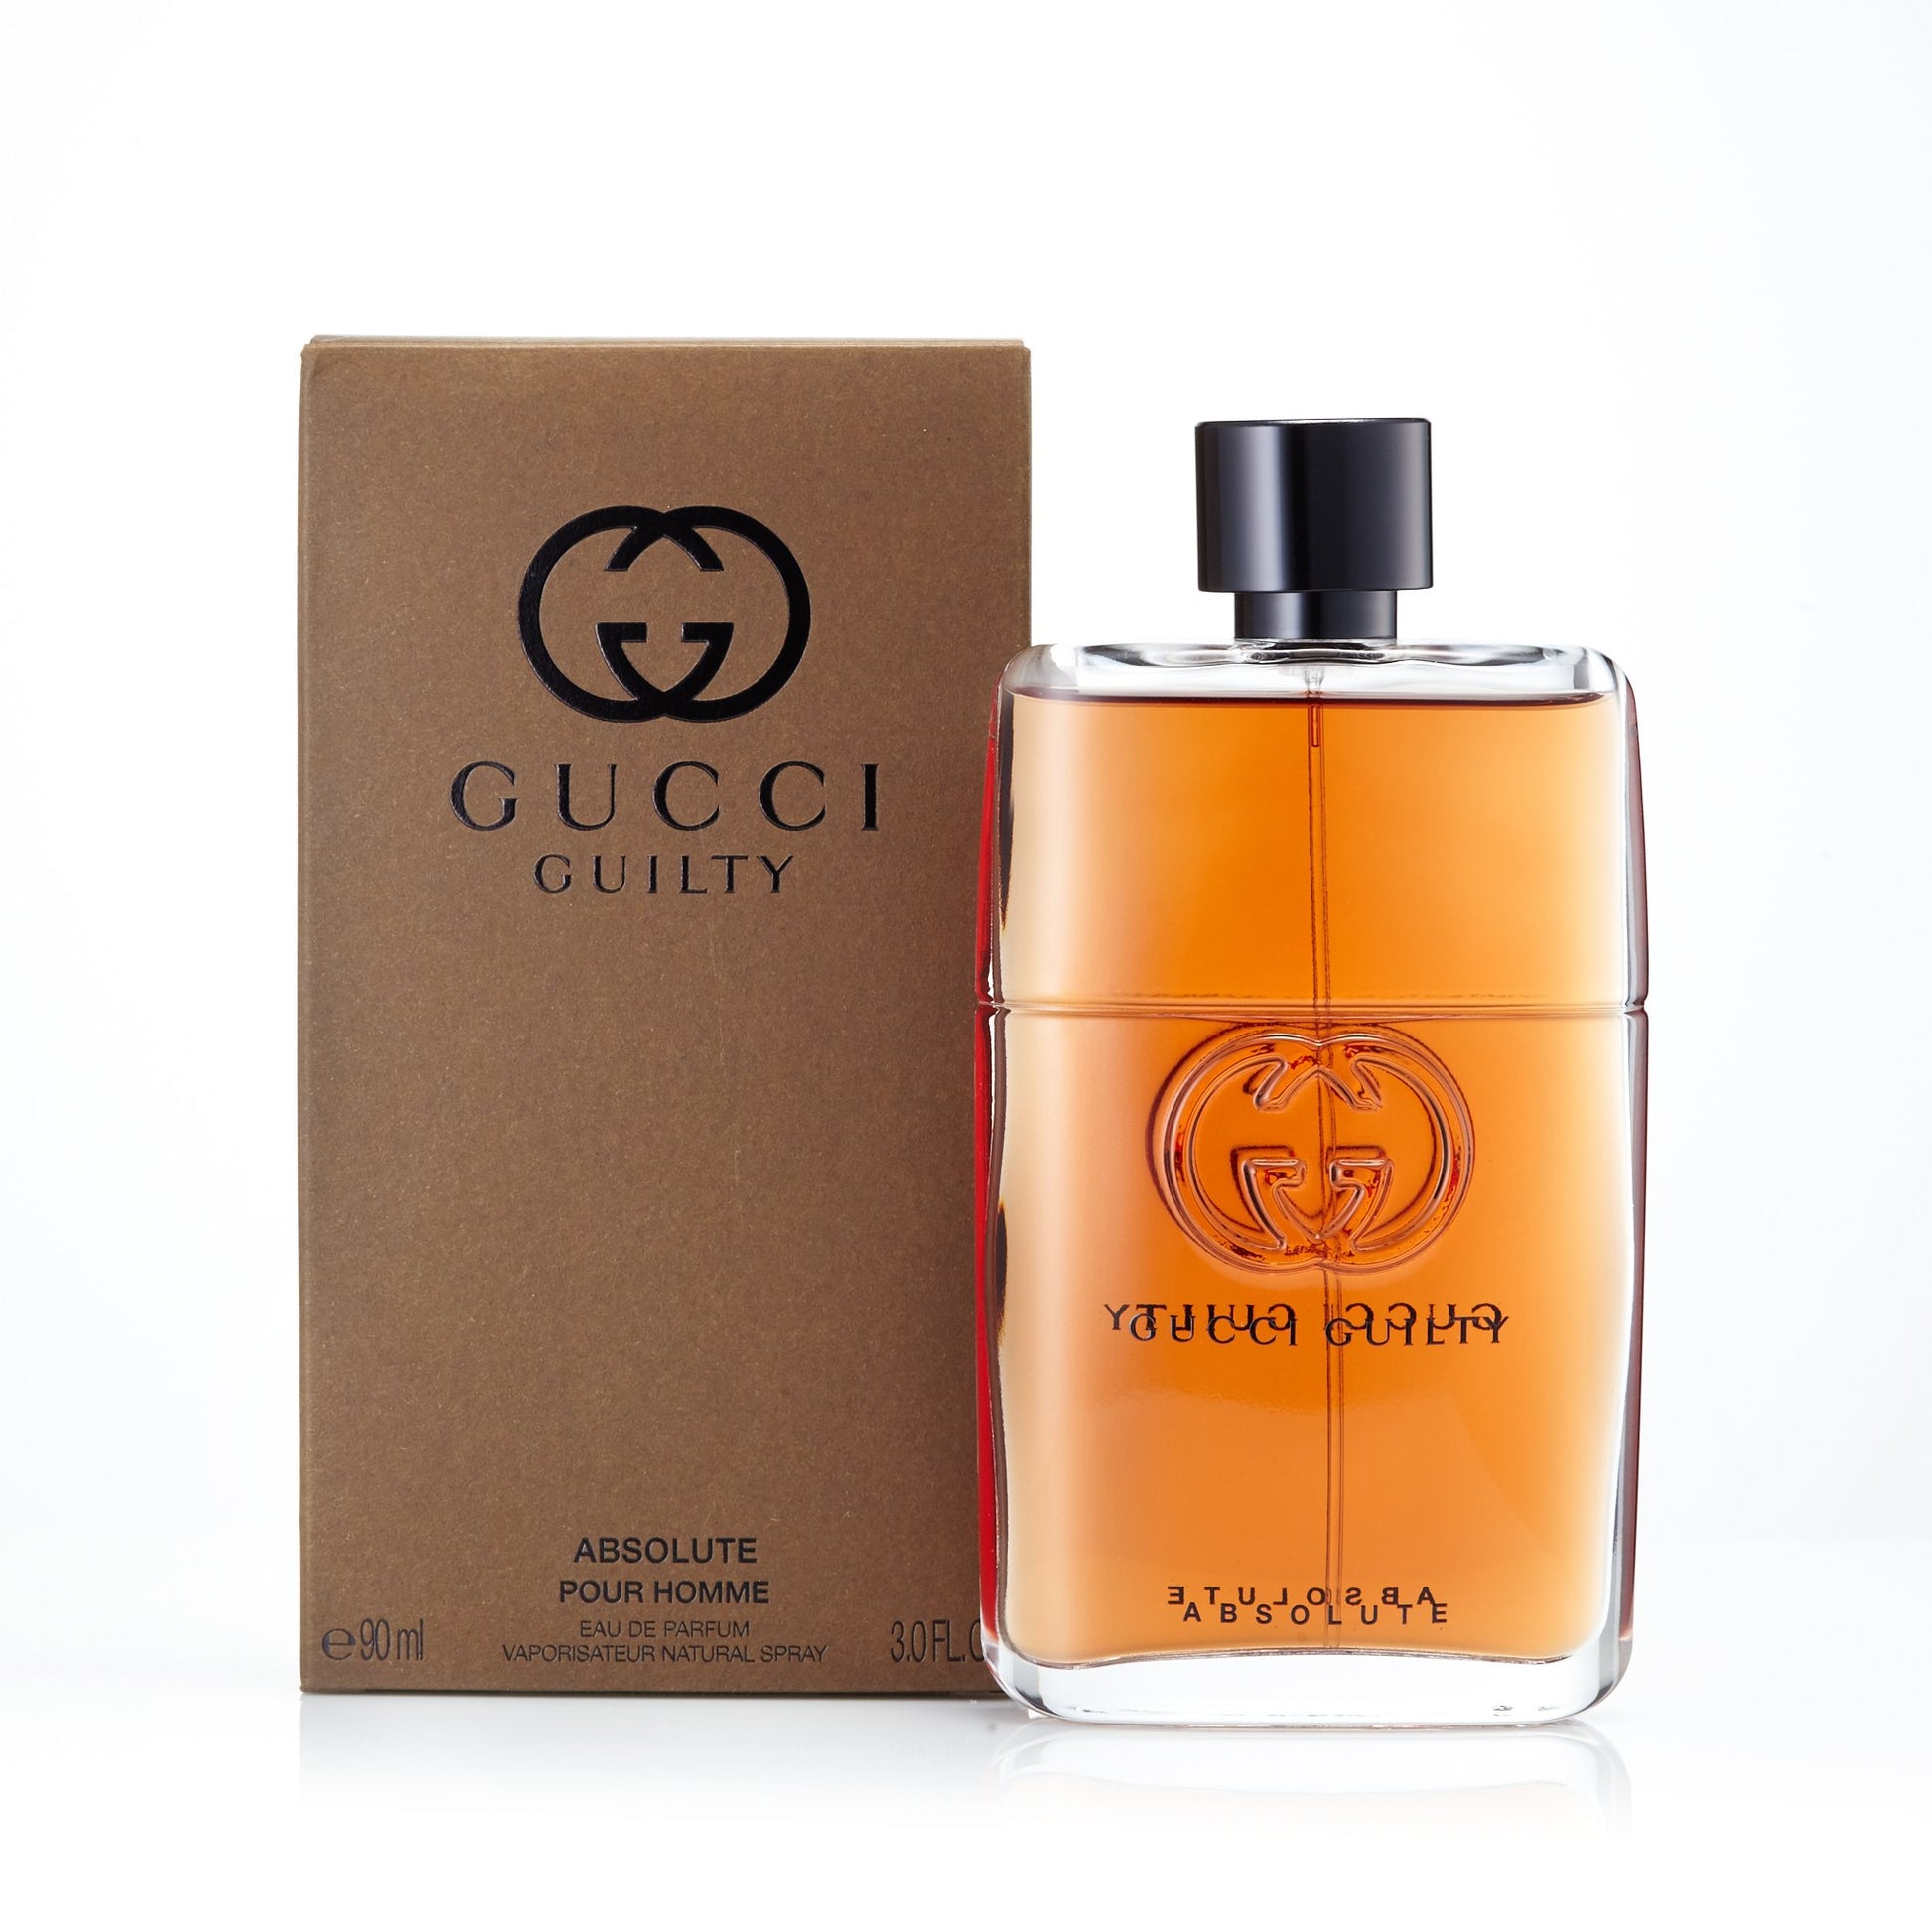 Guilty Absolute Eau de Parfum Spray for Men by Gucci, Product image 2